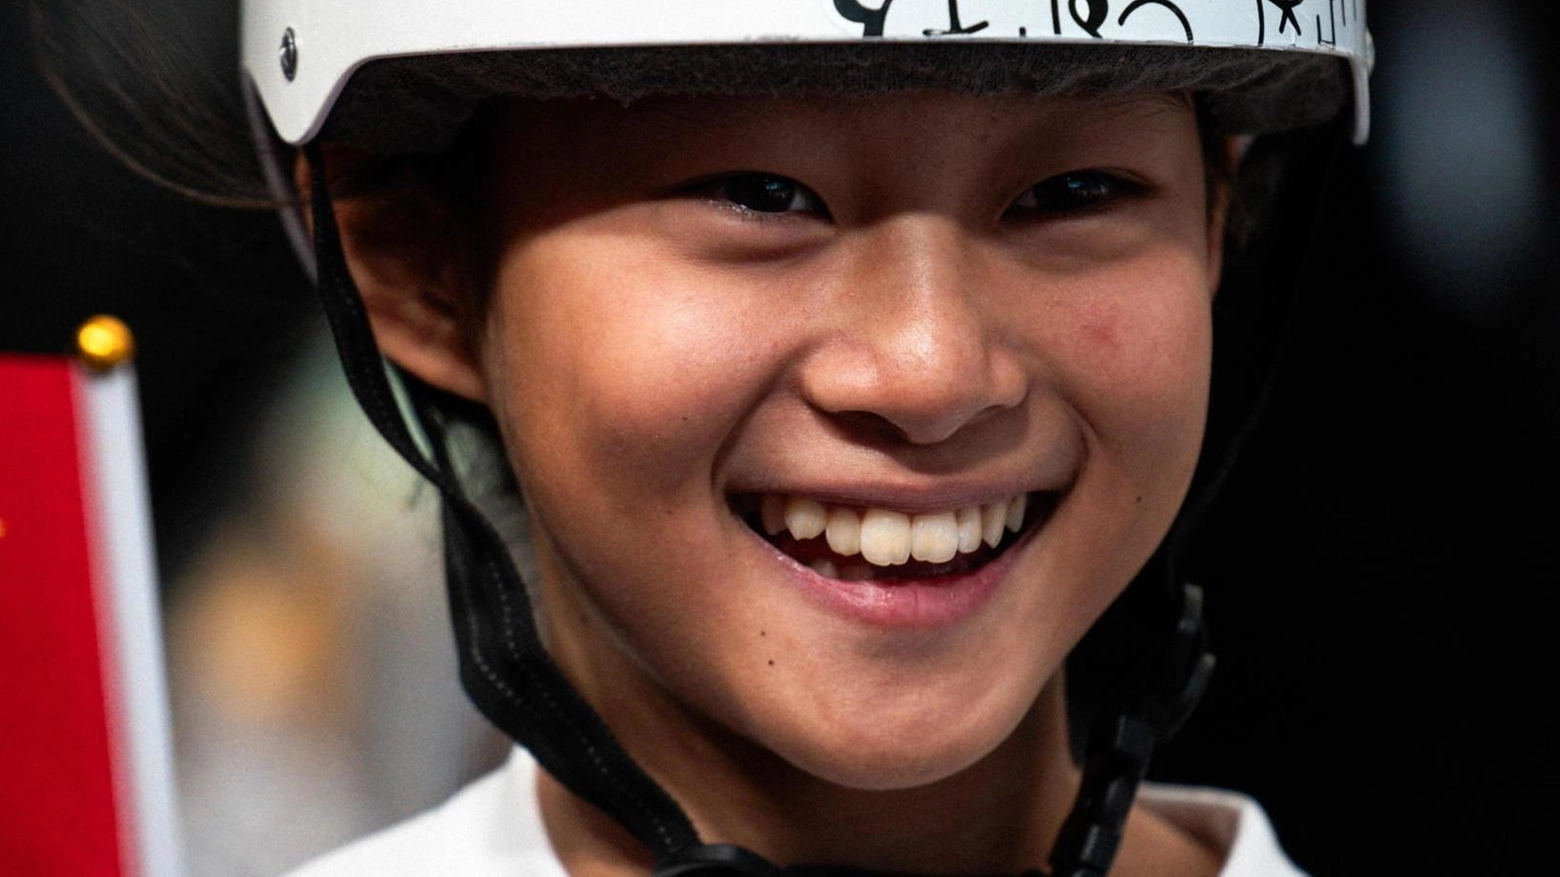 La cinese Zheng Haohao, di 11 anni e 11 mesi, sarà una delle atlete più giovani alle Olimpiadi di Parigi. Specializzata nello skateboard Park, è la più giovane mai schierata dalla Cina.